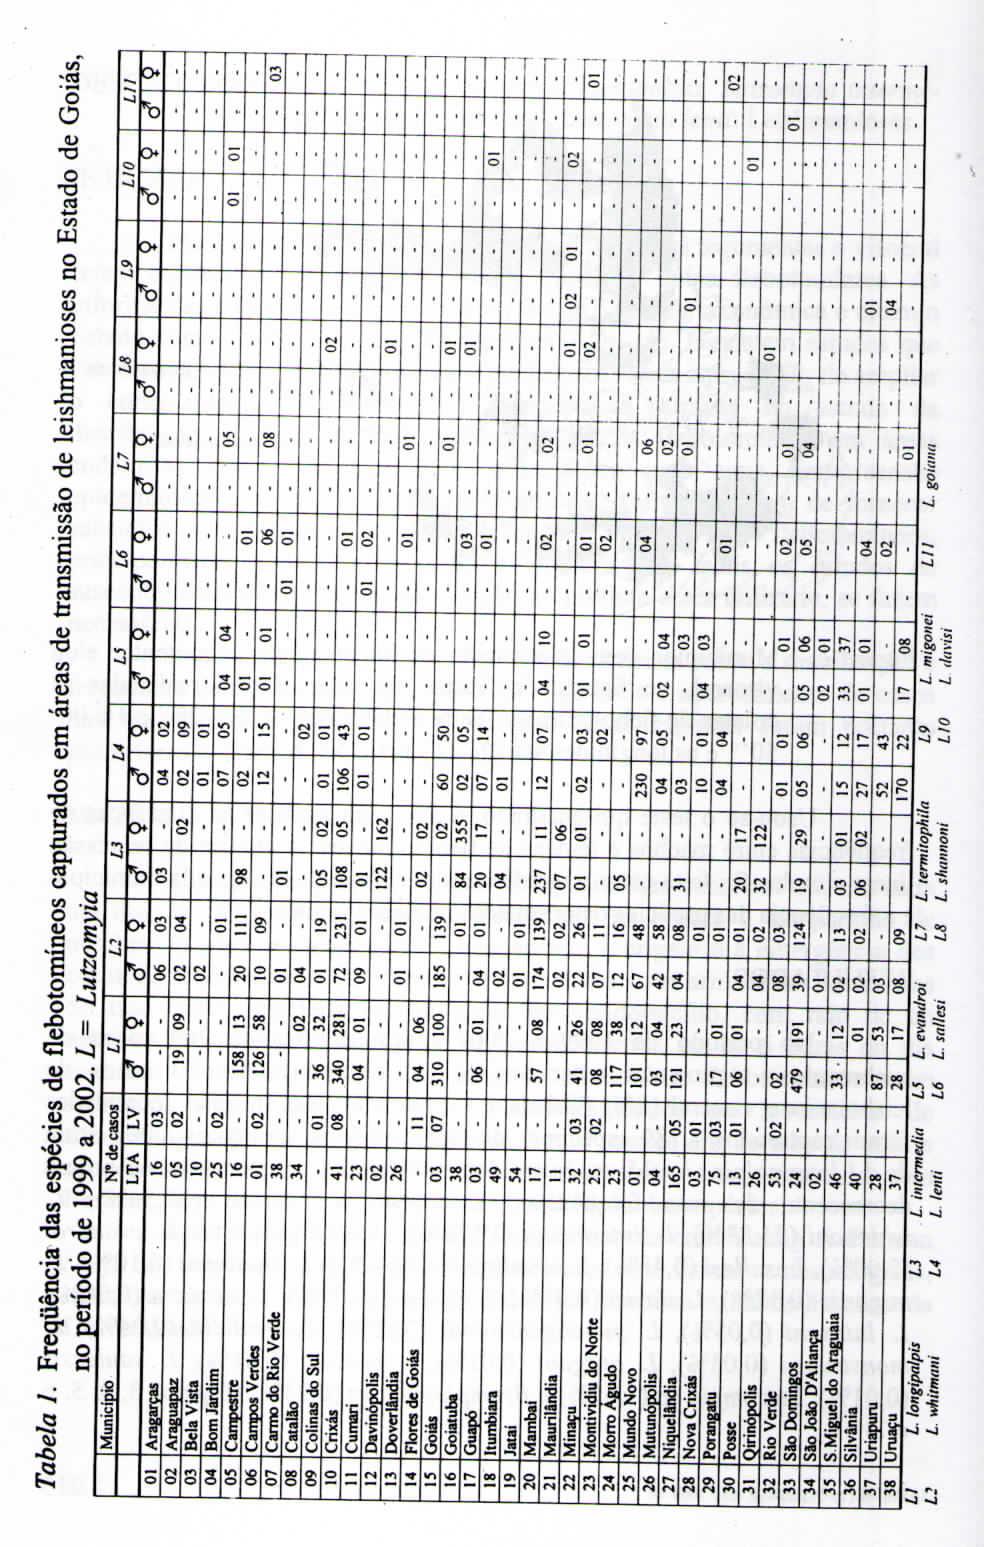 Tabela 1 Frequência das espécies de flebotomíneos capturados em áreas de transmissão de leishmanioses no Estado de Goiás, no período de 1999 a 20 L Lutzomia Í OR 09 to II 13 14 15 16 18 Município